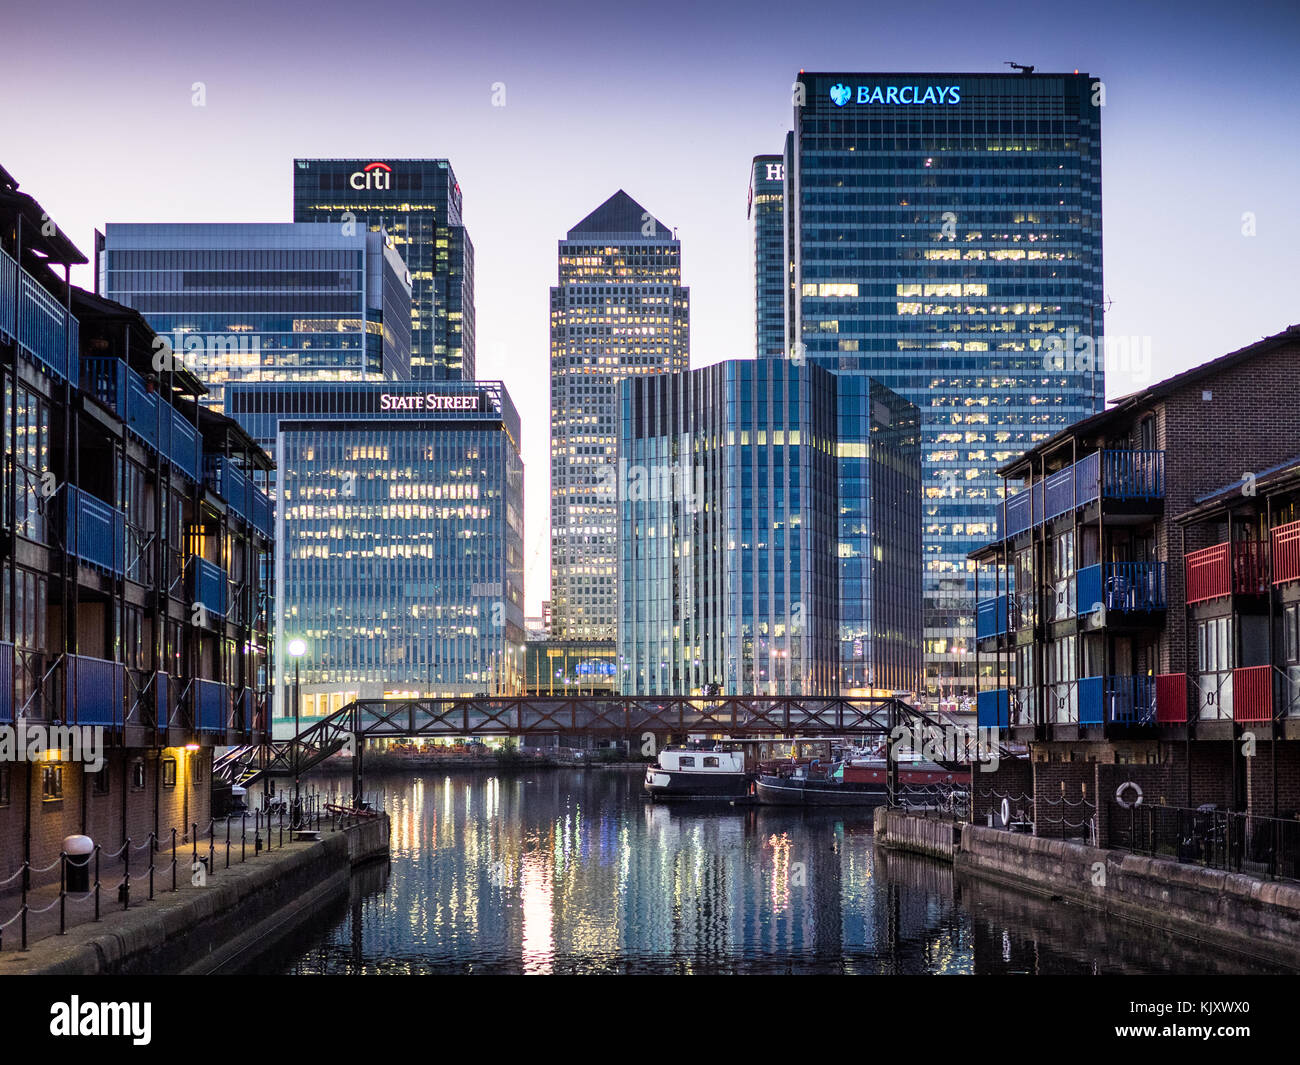 Les banques de Londres, Canary Wharf au crépuscule - Barclays, HSBC, State Street, CitiBank Banque D'Images